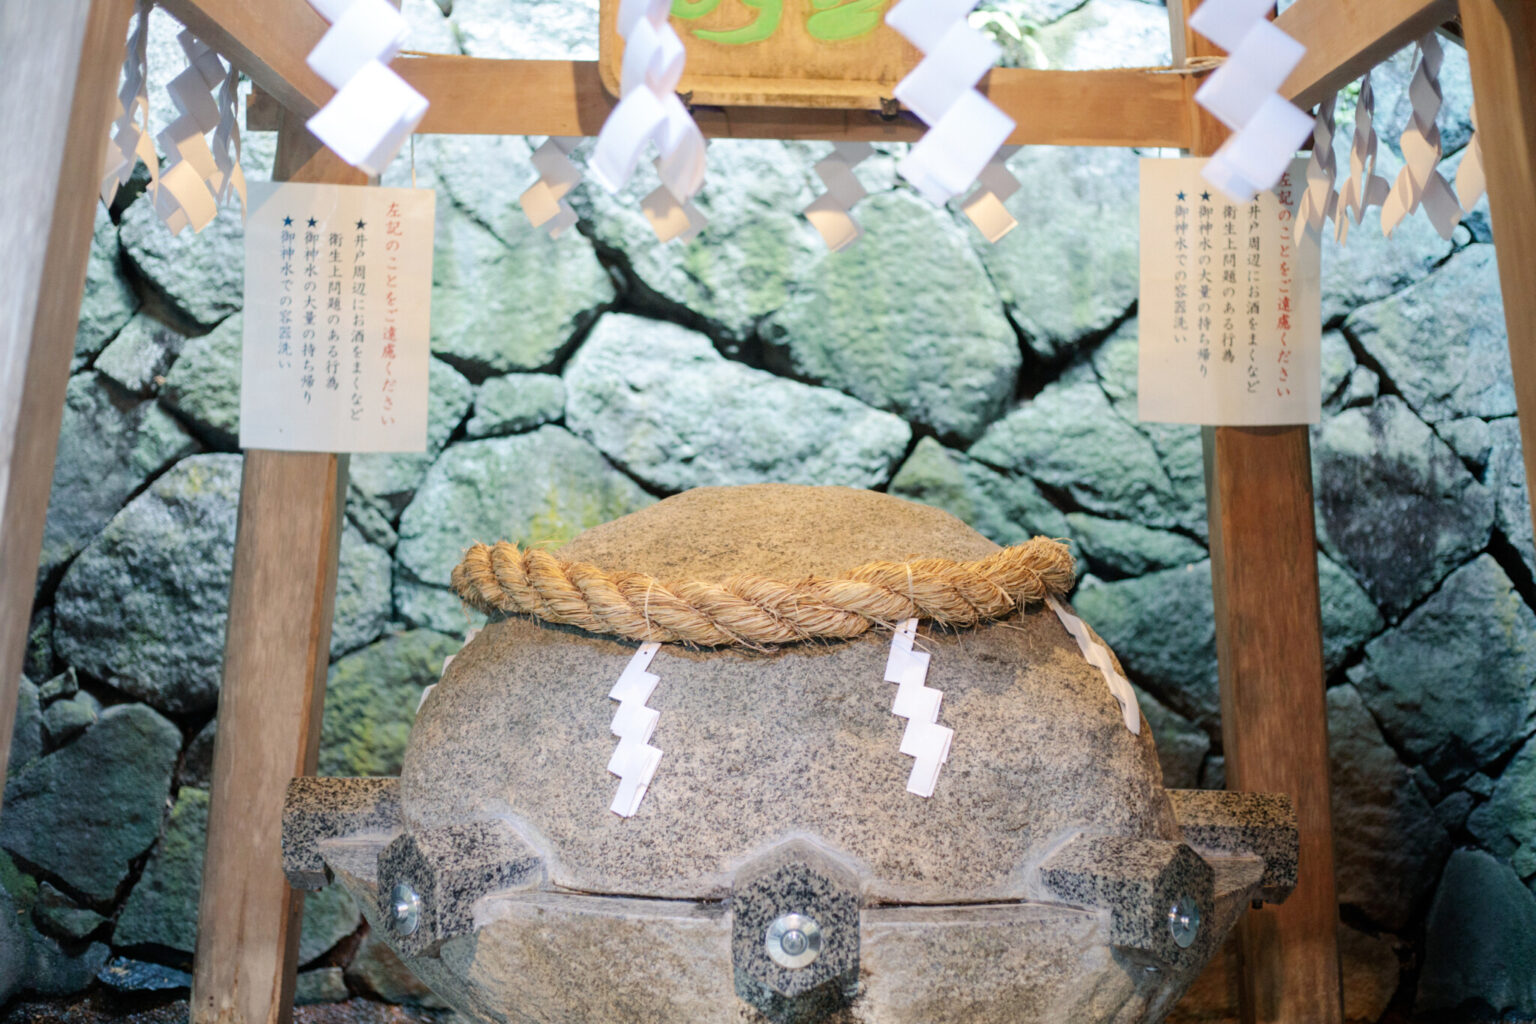 狭井神社の境内に位置する薬井戸。御神水は汲んで持ち帰ることも可能だ。その場で飲むための使い捨ての紙コップが用意されており、神社にも新しい生活様式が導入されている。